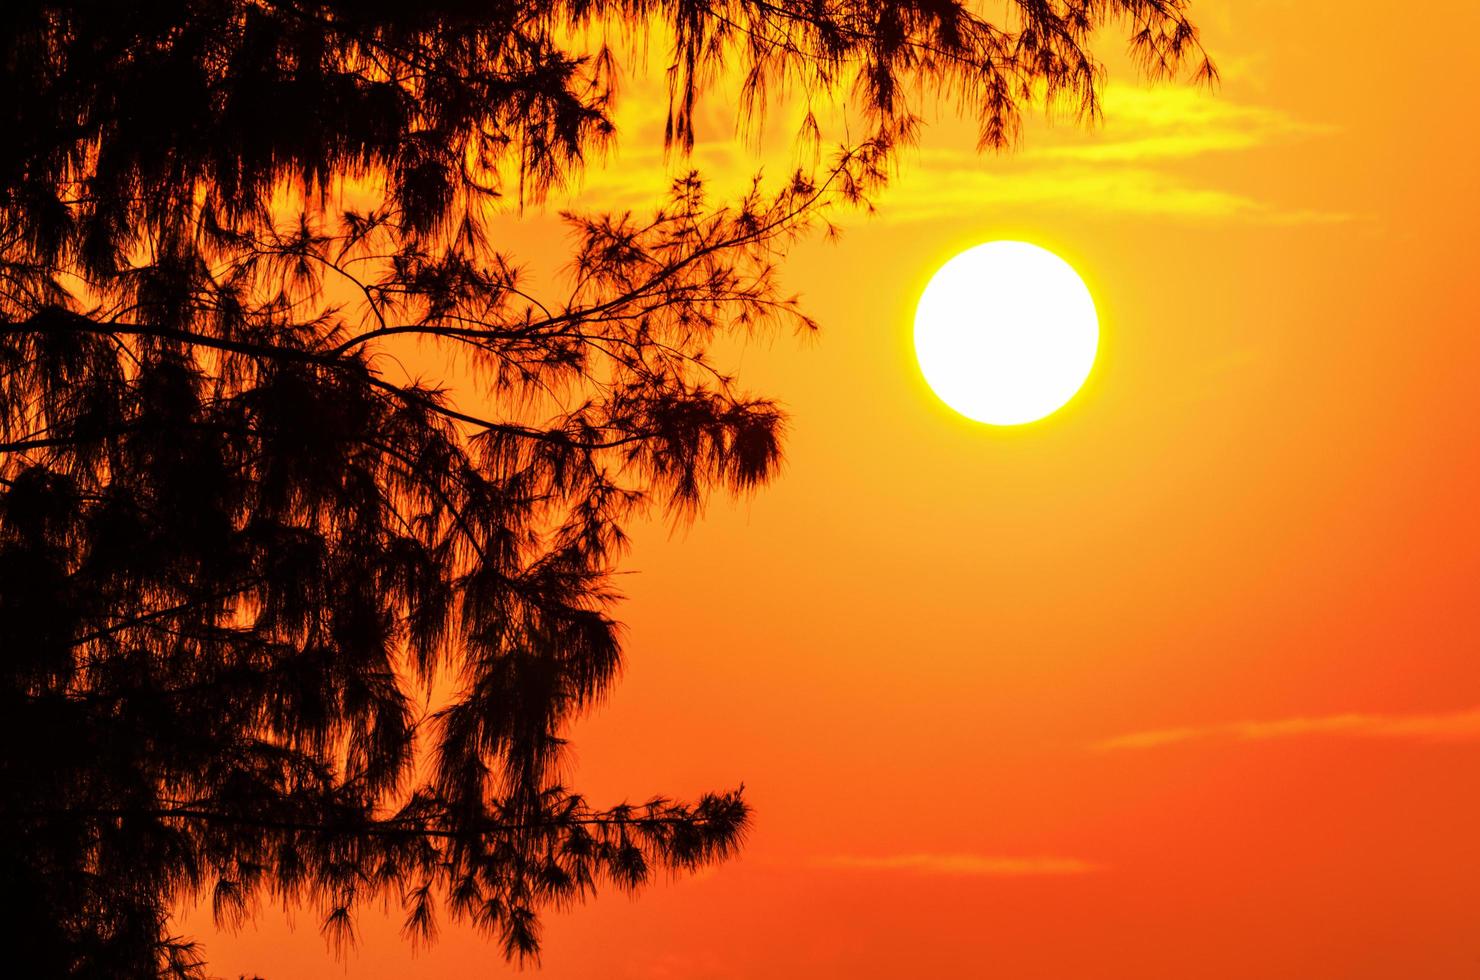 silhouette de l'arbre et du soleil dans un jaune orange clair au coucher du soleil photo